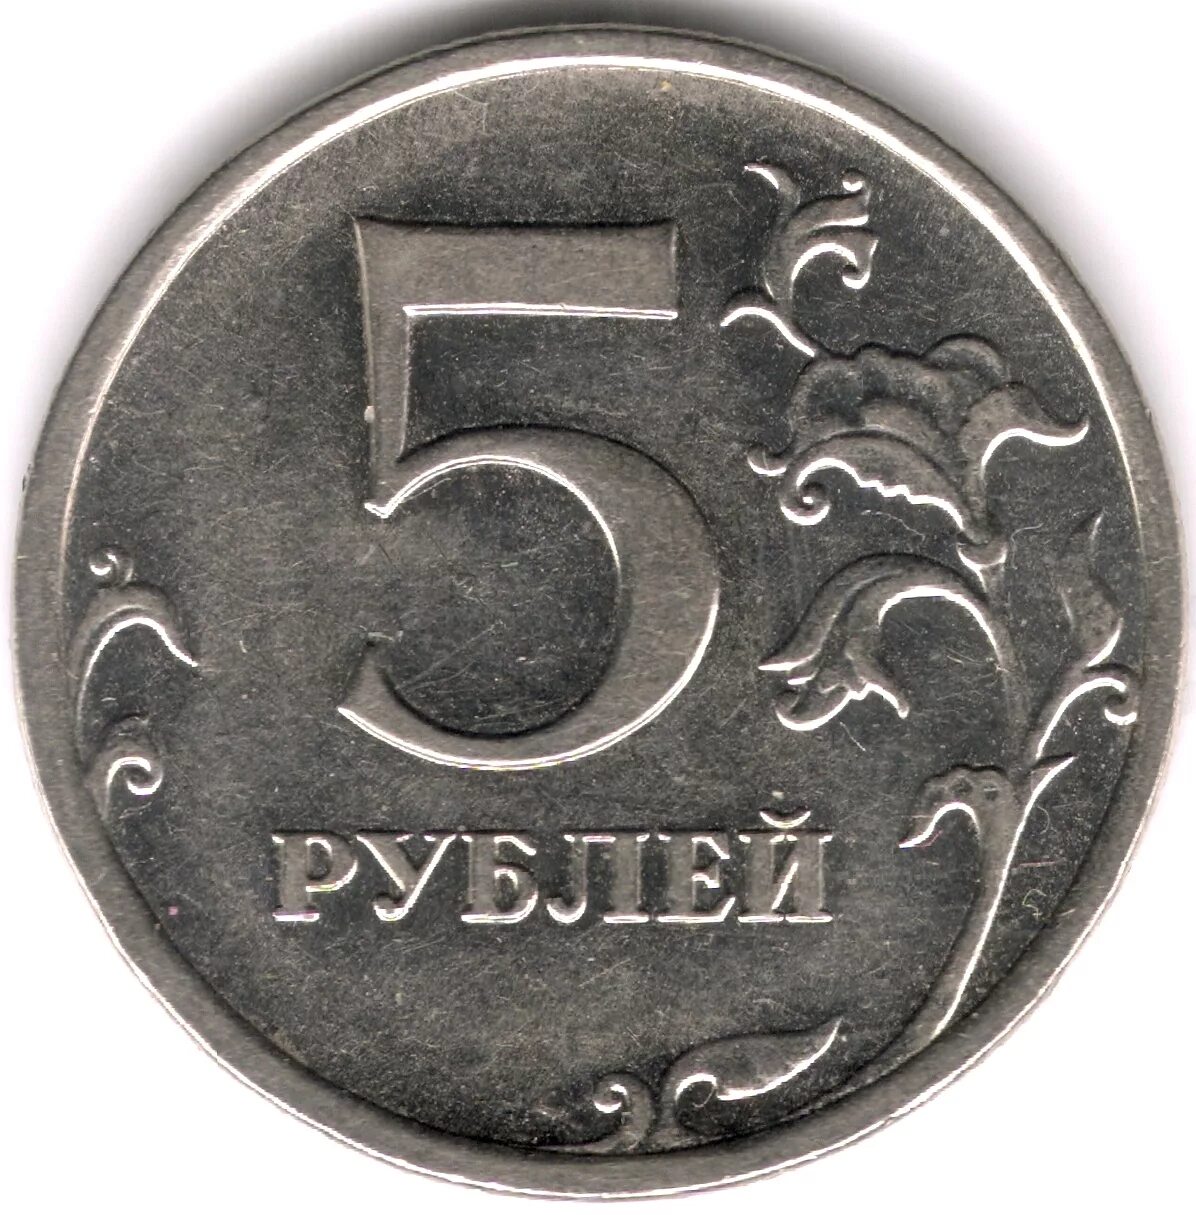 5 Рублей 1998 ММД шт.а1 и шт.а2. Редкие монеты 5 рублей СПМД. Монета 5 руб. 2012 г. ММД магнитная.. Ценные пятирублевые монеты. Монету пятирублевую 1997 года